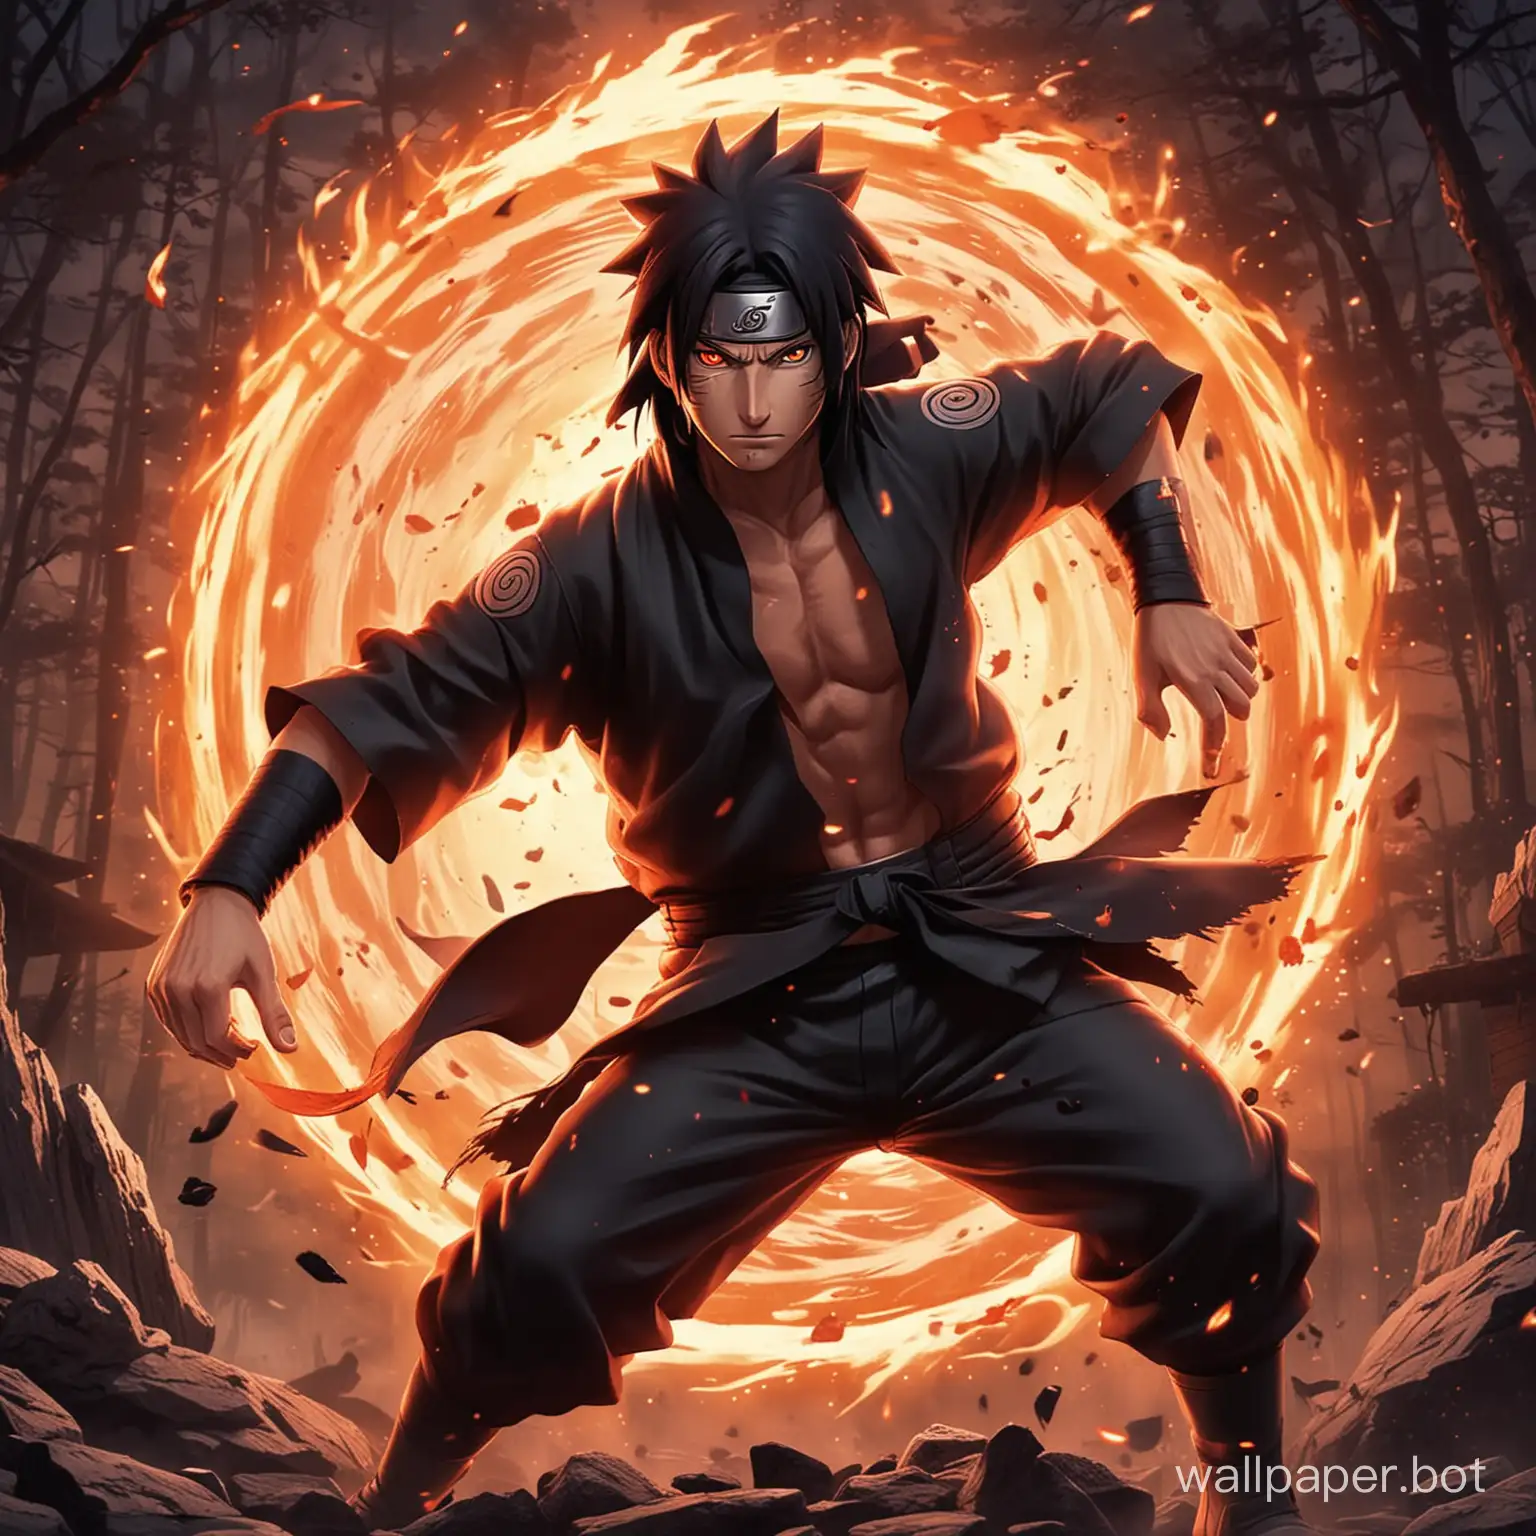 Naruto full power fight with Itachi Uchiha